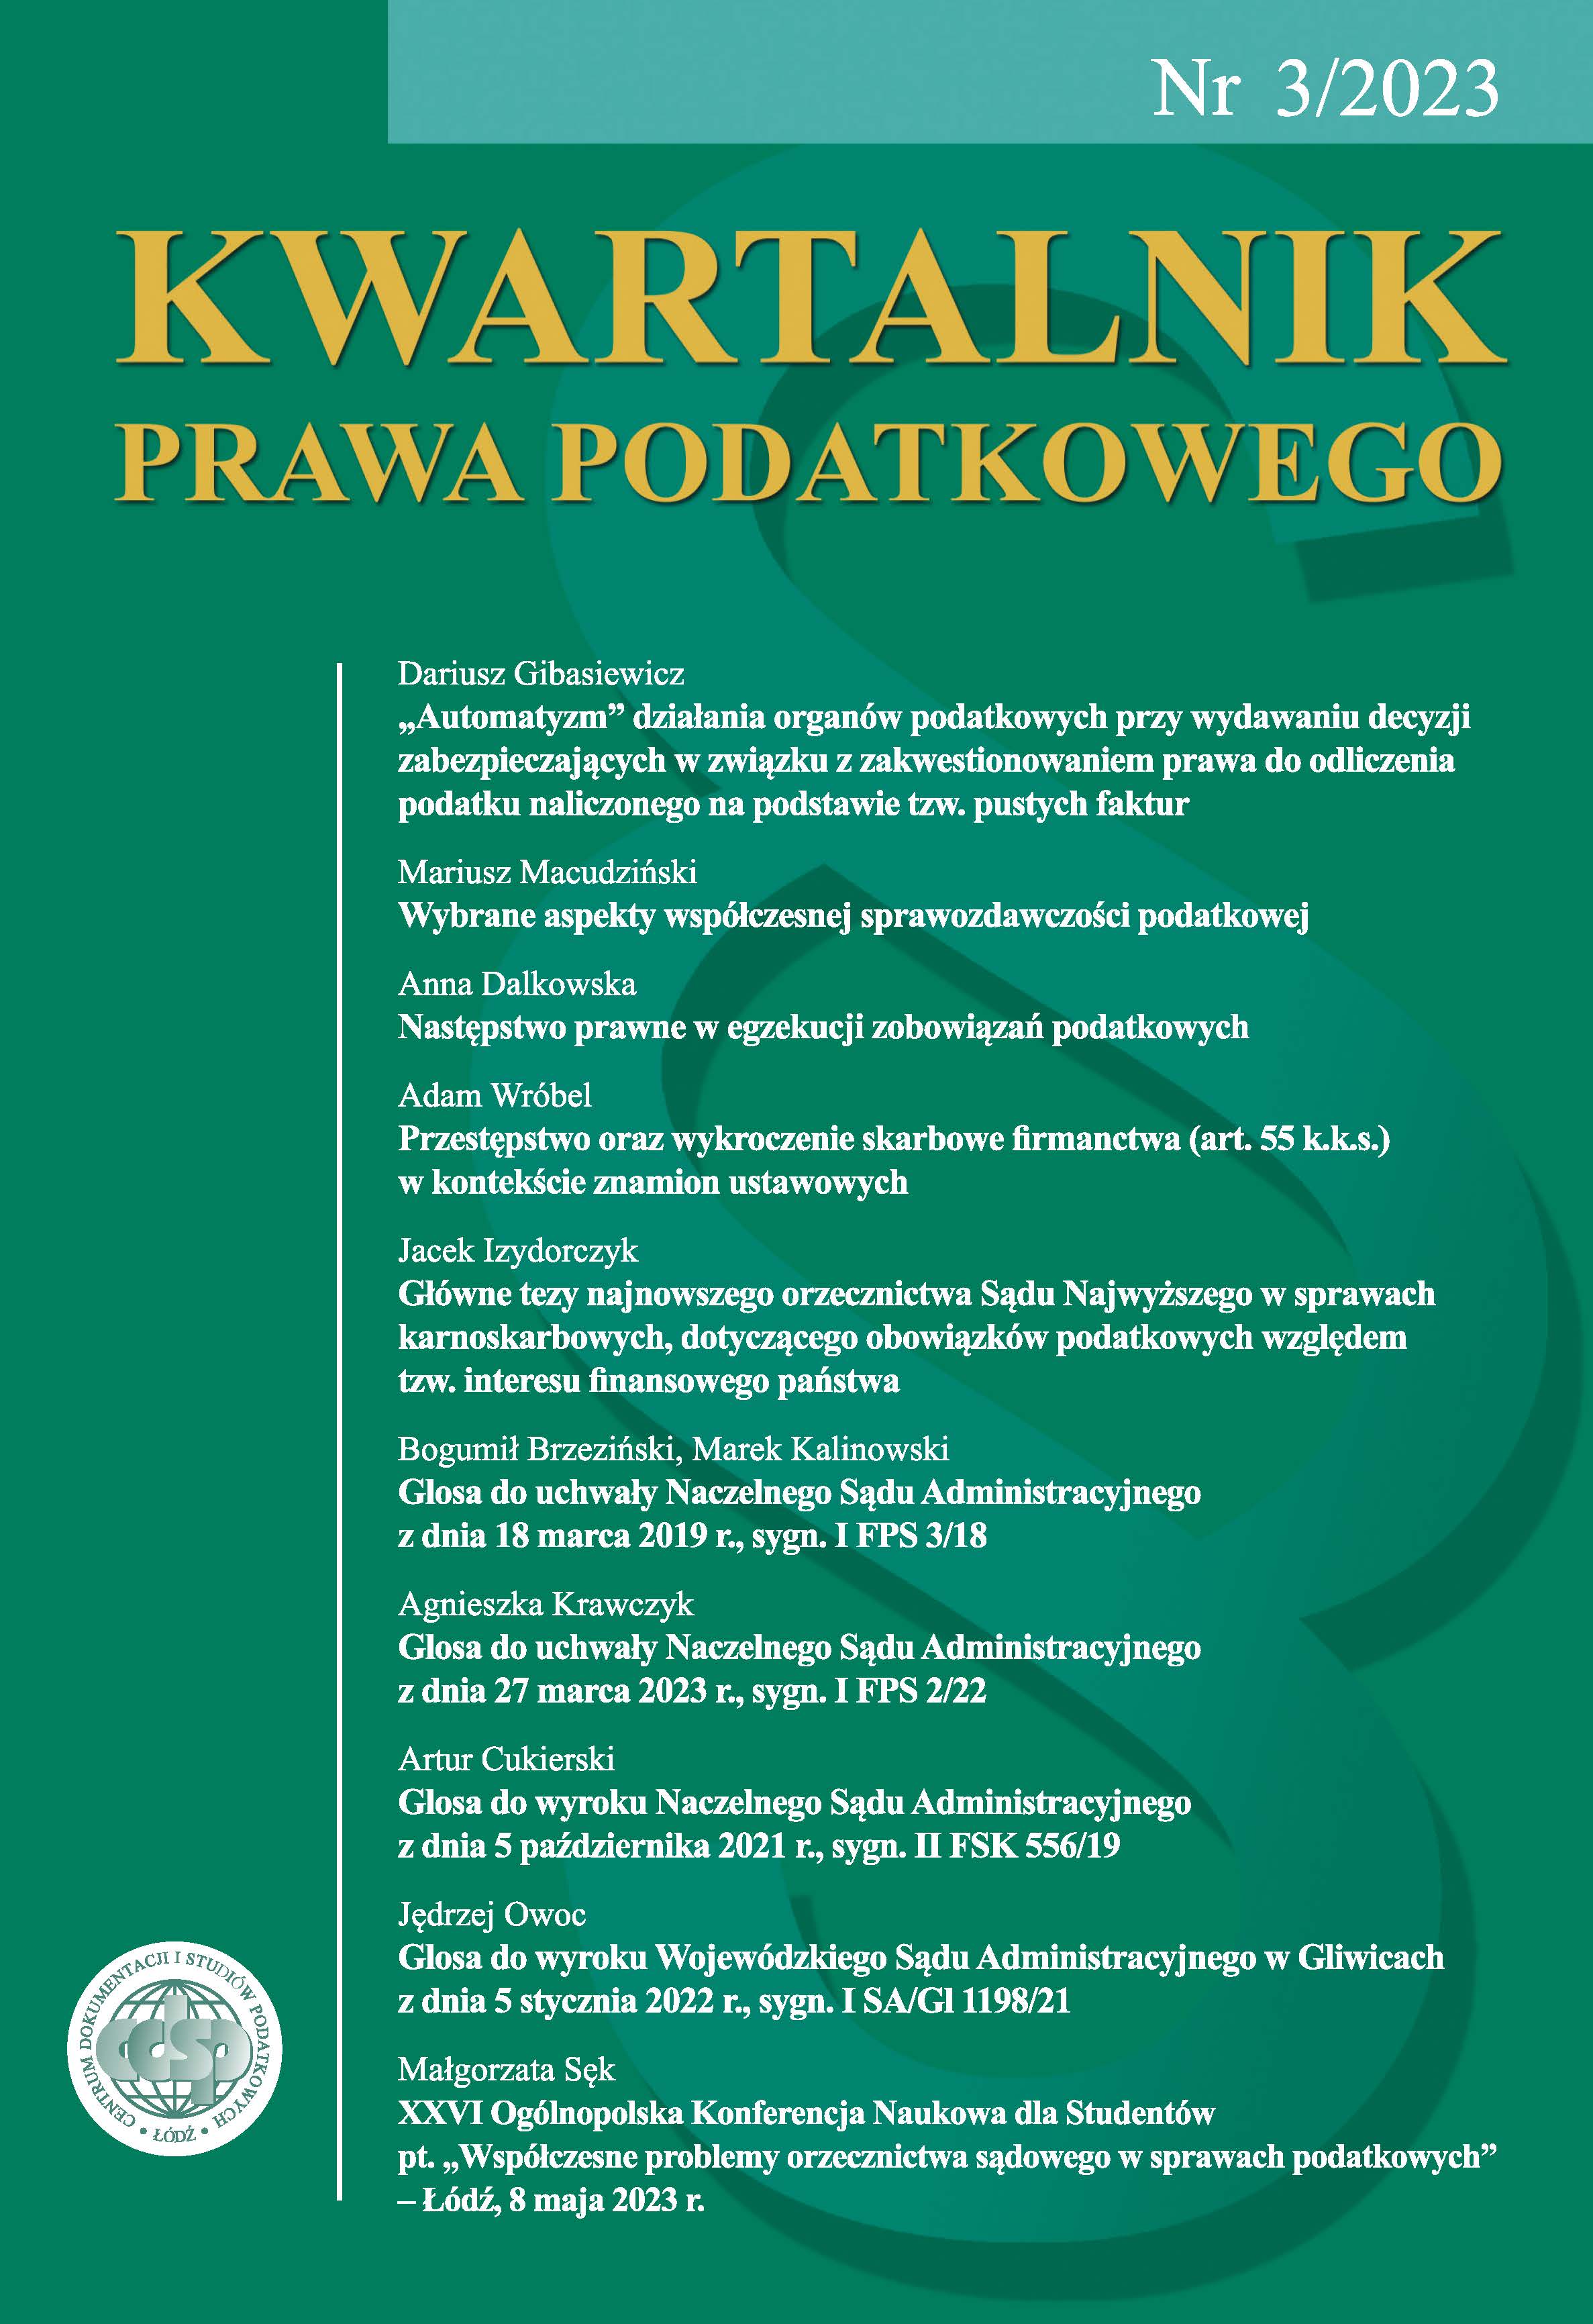 XXVI Ogólnopolska Konferencja Naukowa dla Studentów pt. „Współczesne problemy orzecznictwa sądowego w sprawach podatkowych” – Łódź, 8 maja 2023 r.